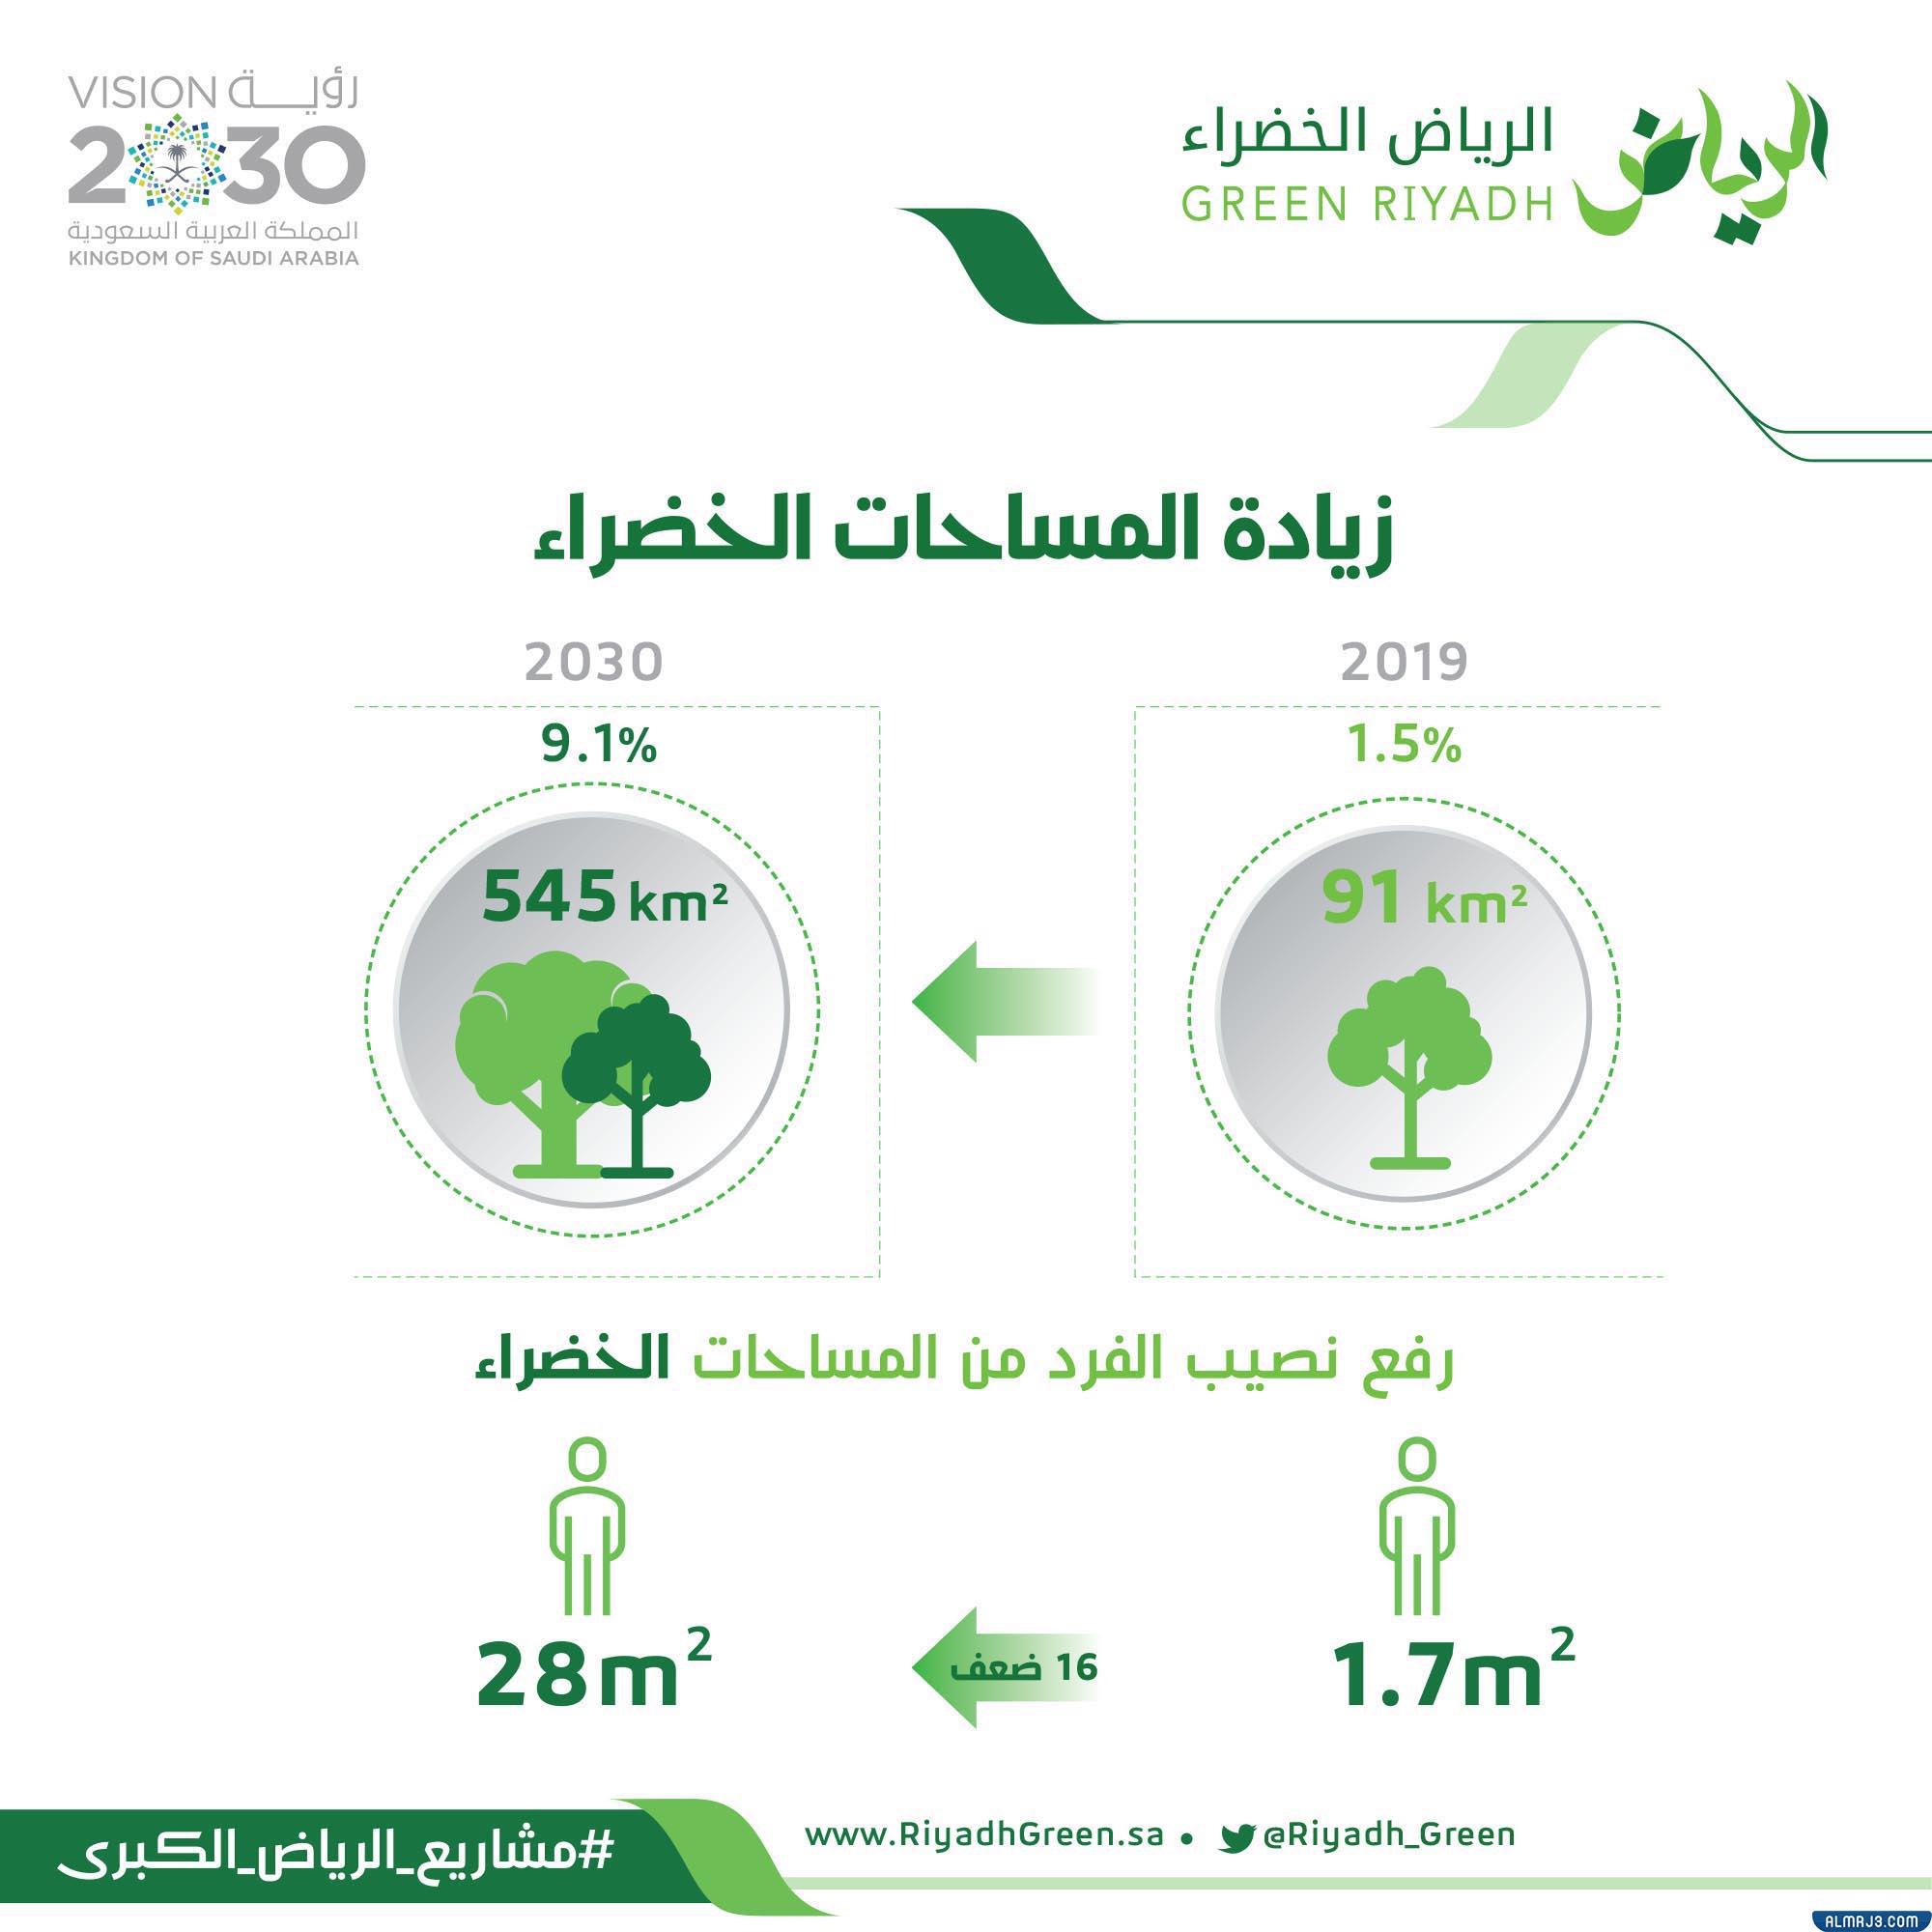 صور توضح أهداف مشروع الرياض الخضراء